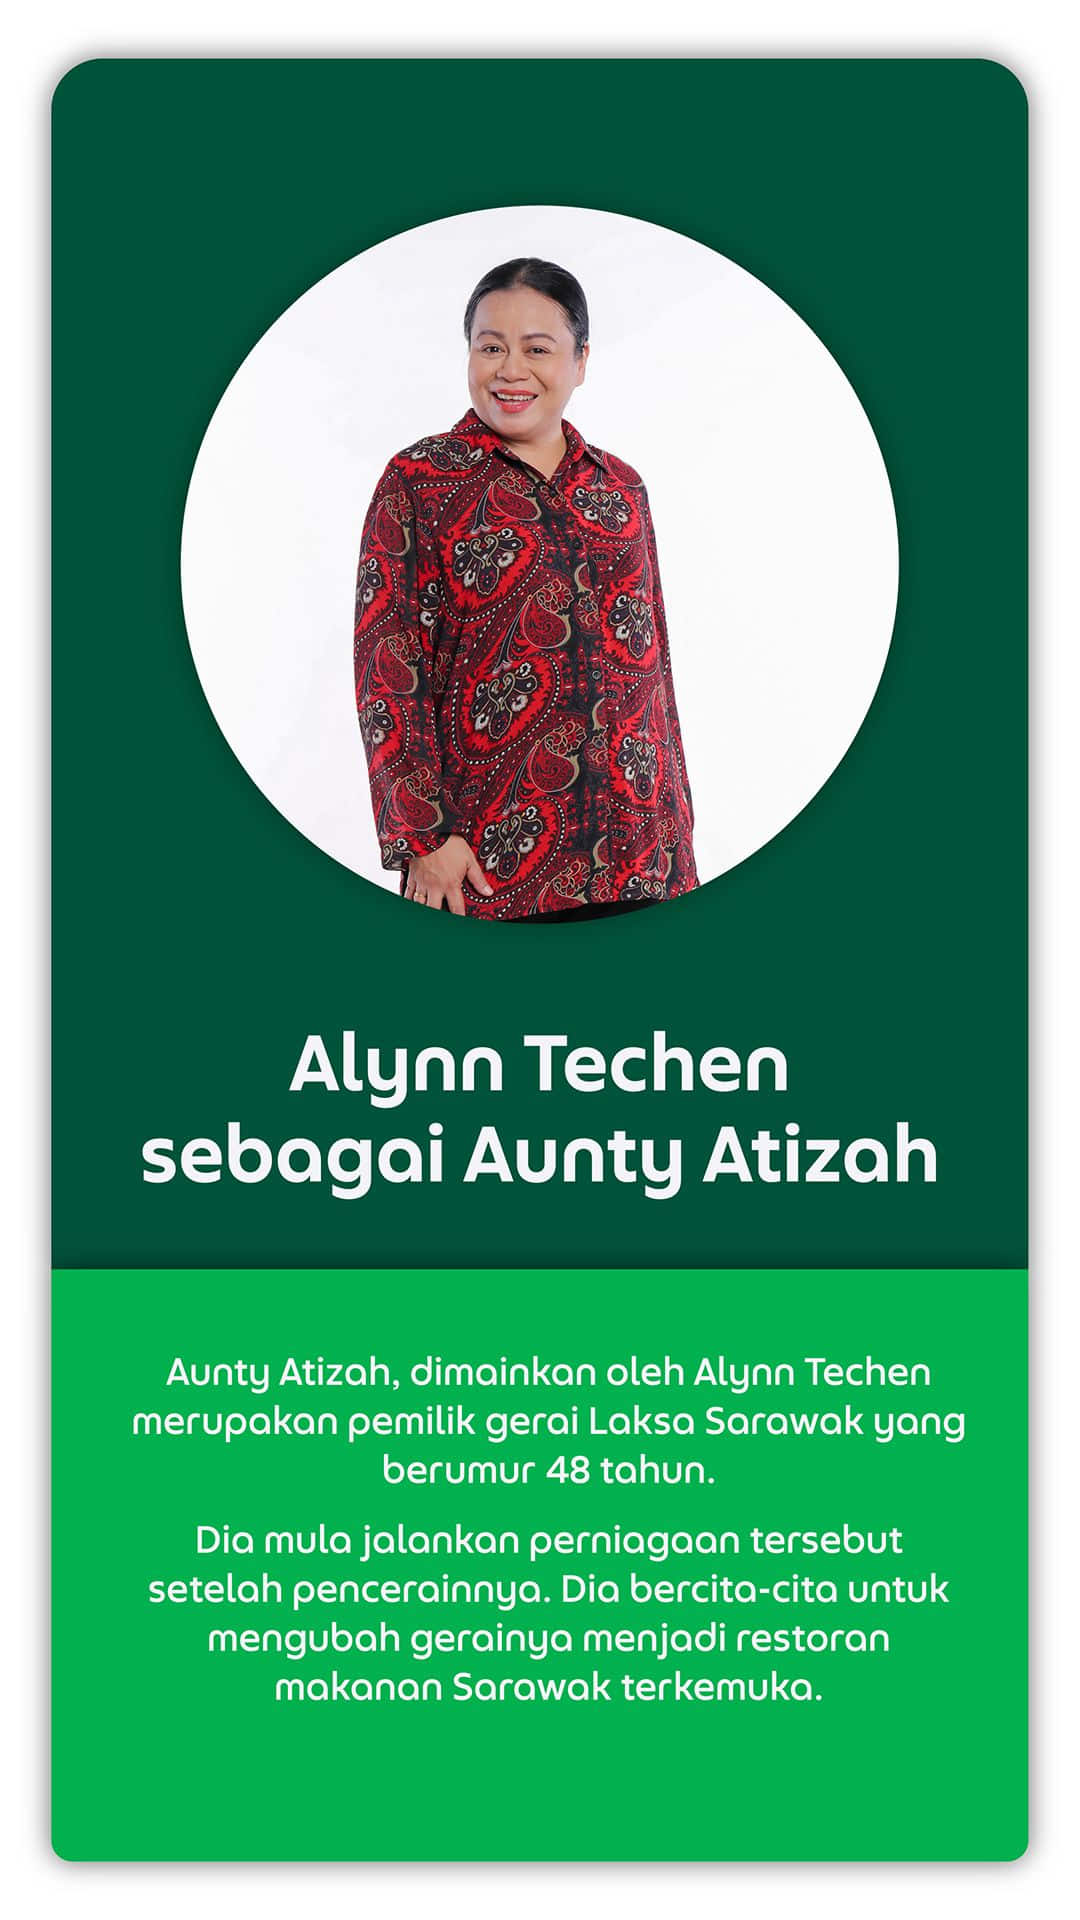 Alynn Techen sebagai Aunty Atizah